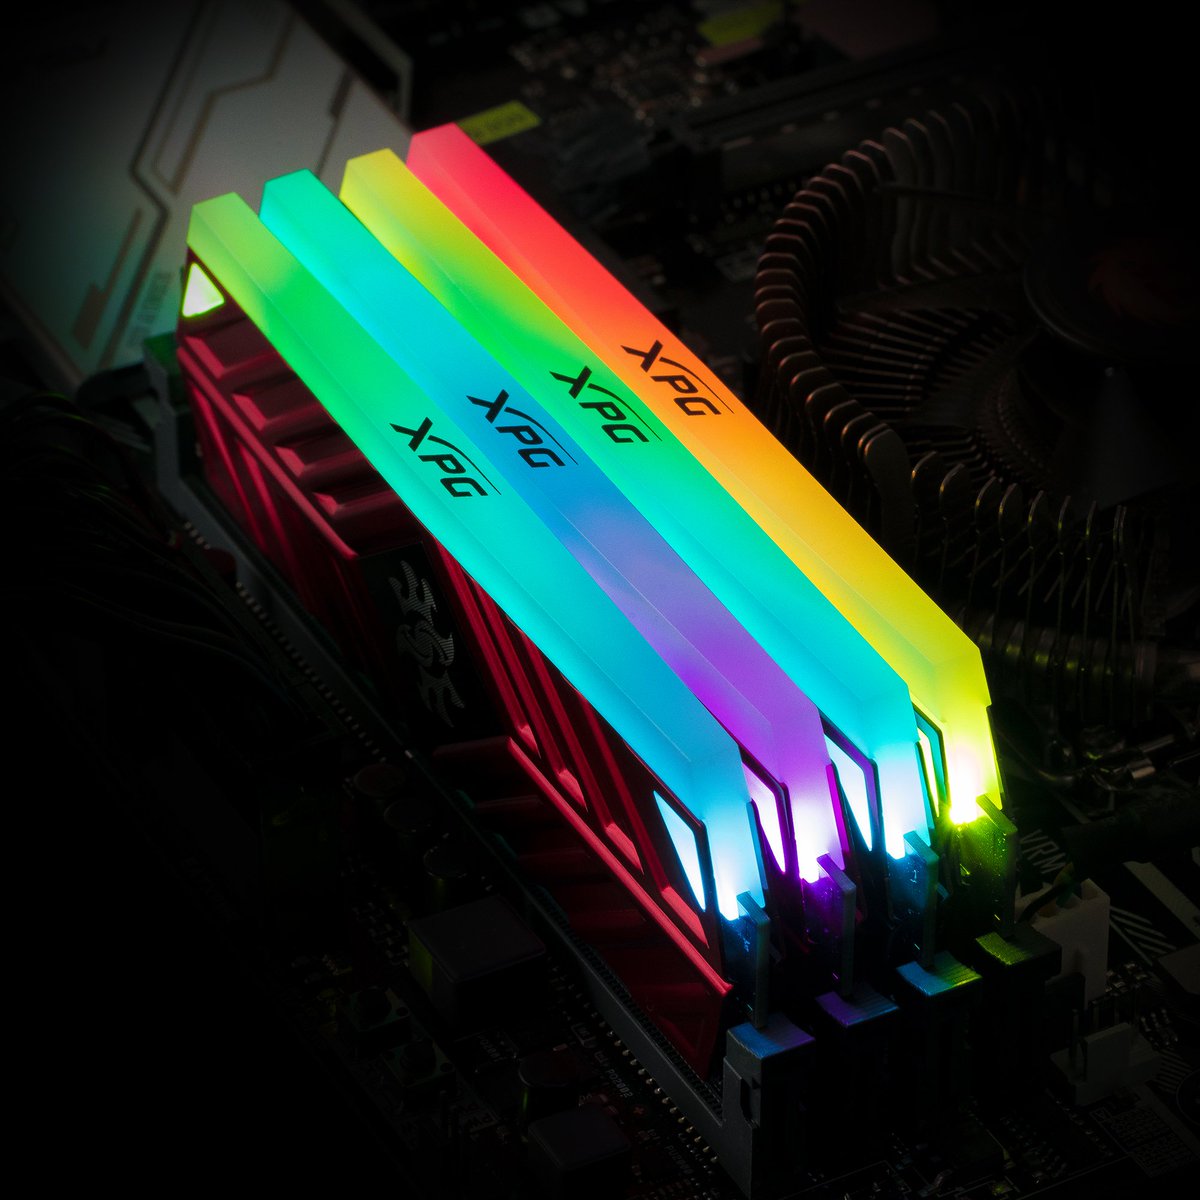 RAM Adata XPG Spectrix D41 LED RGB RED 8GB (1x8GB) 3200Mhz DDR4